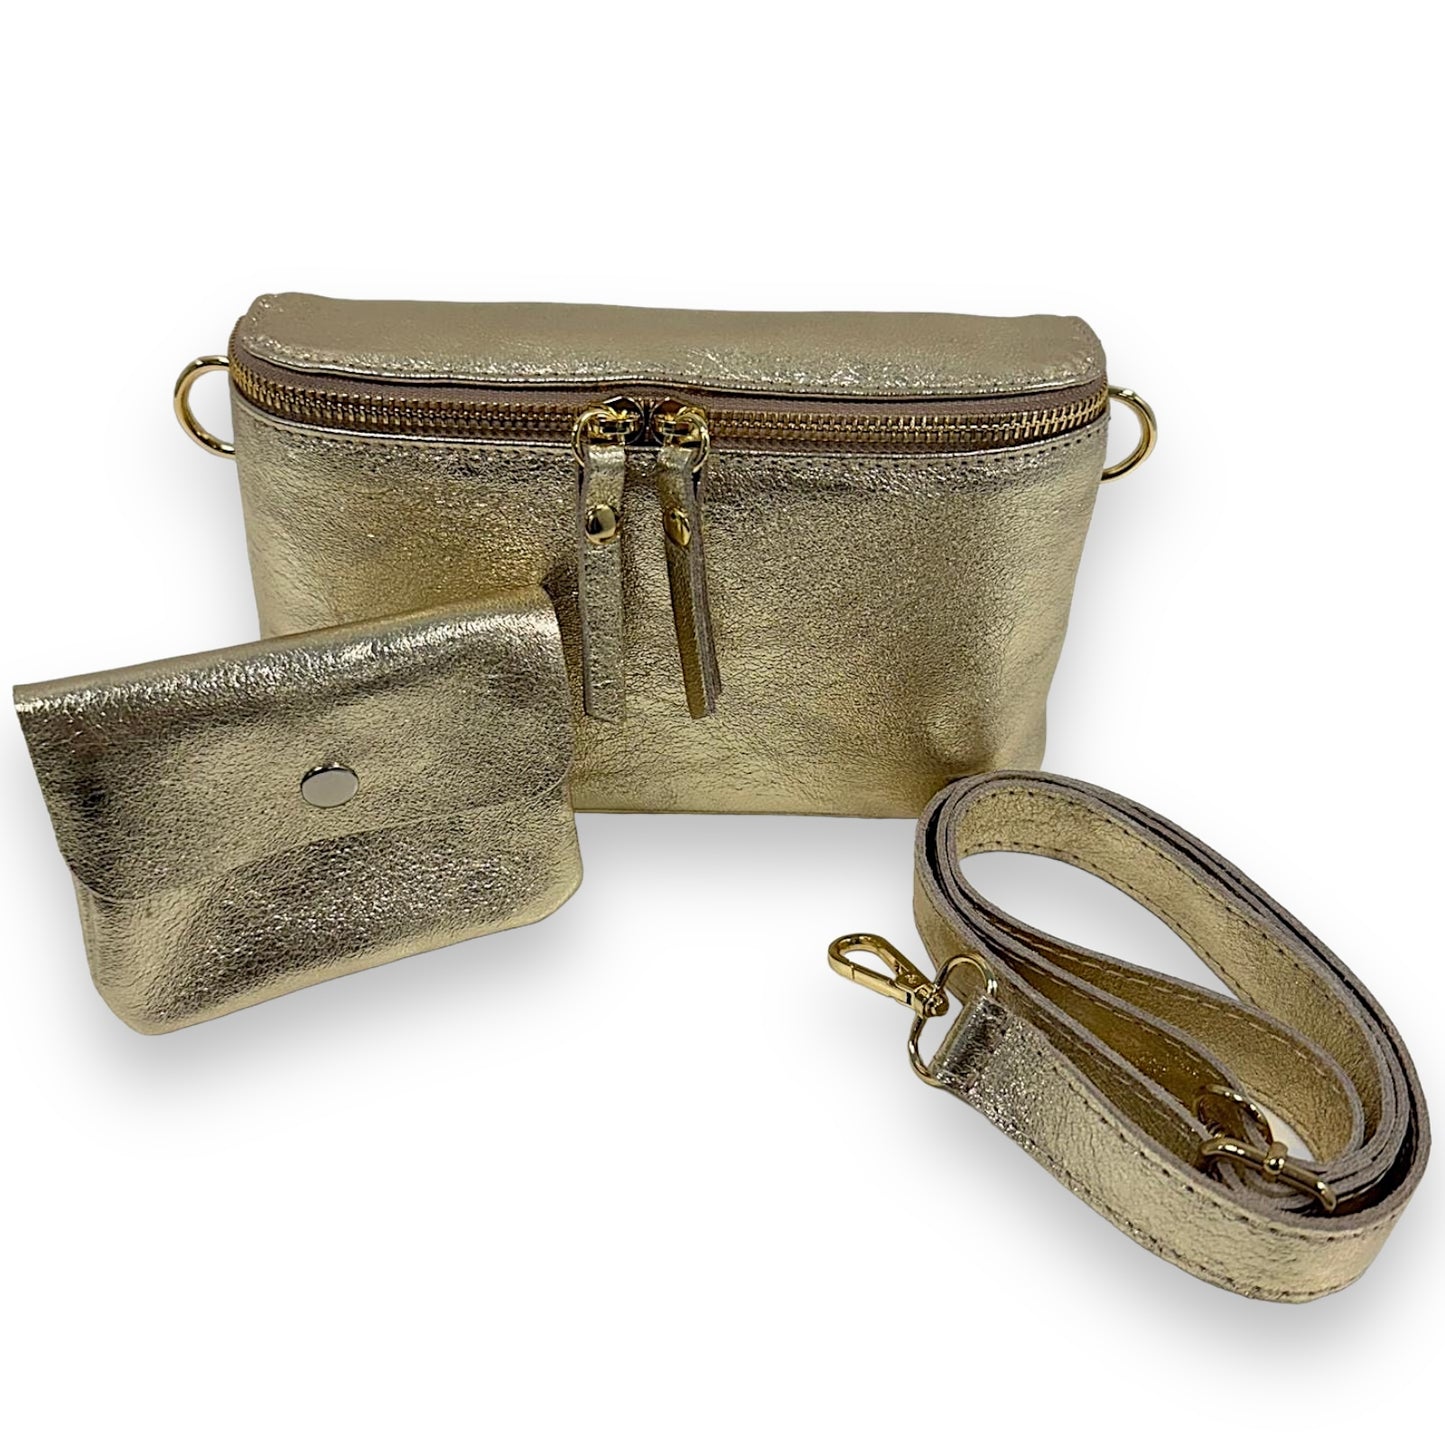 Bauchtasche Leder mit Geldbörse und Reißverschluss gold